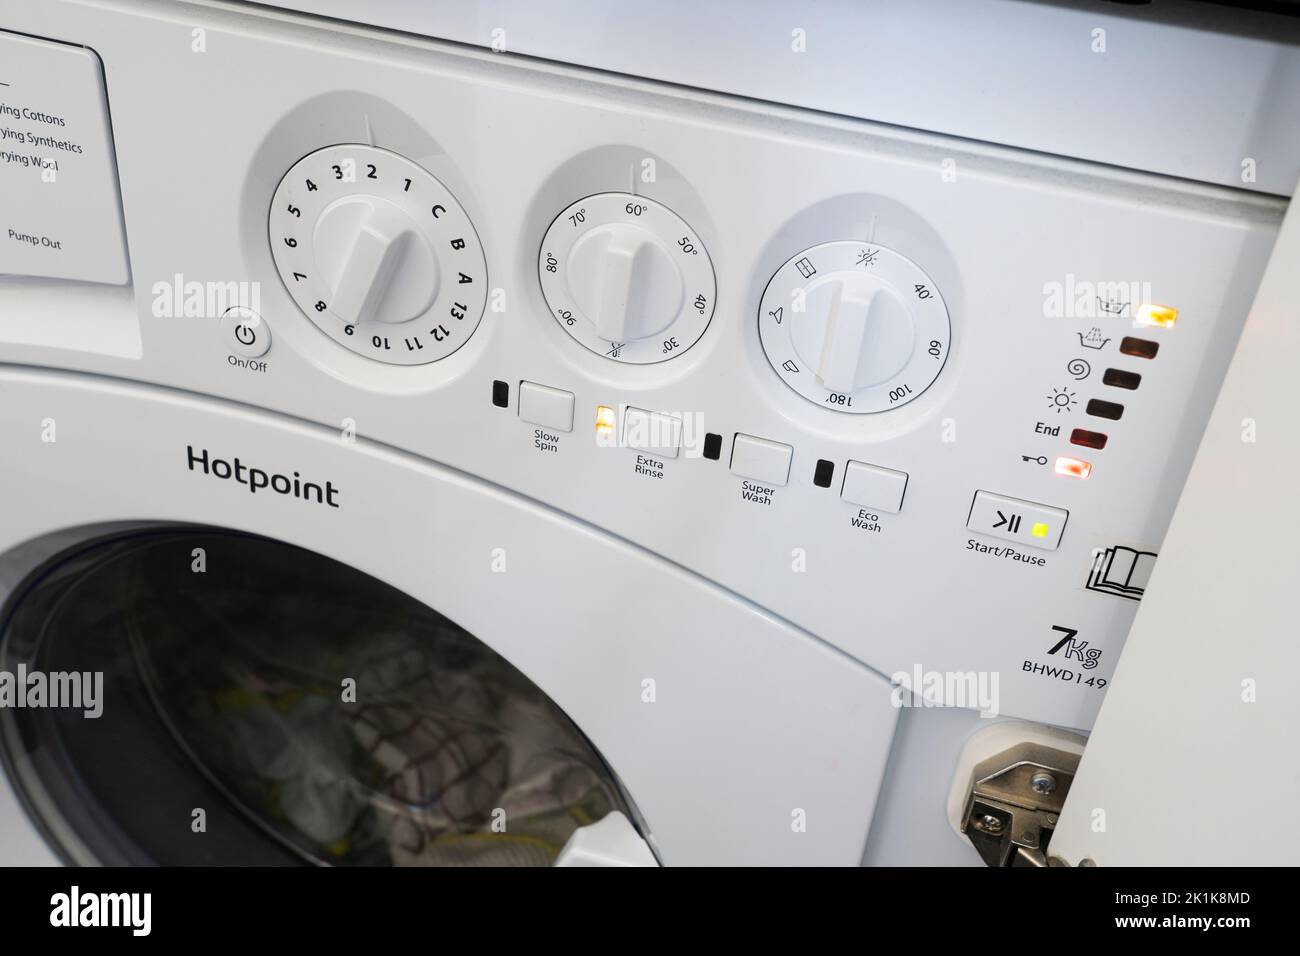 Nahaufnahme der Tasten und Drehregler einer Waschmaschine. Konzept - Wäsche waschen, Energie sparen, Strompreis, Spitzennachfrage, Energieeffizienz Stockfoto